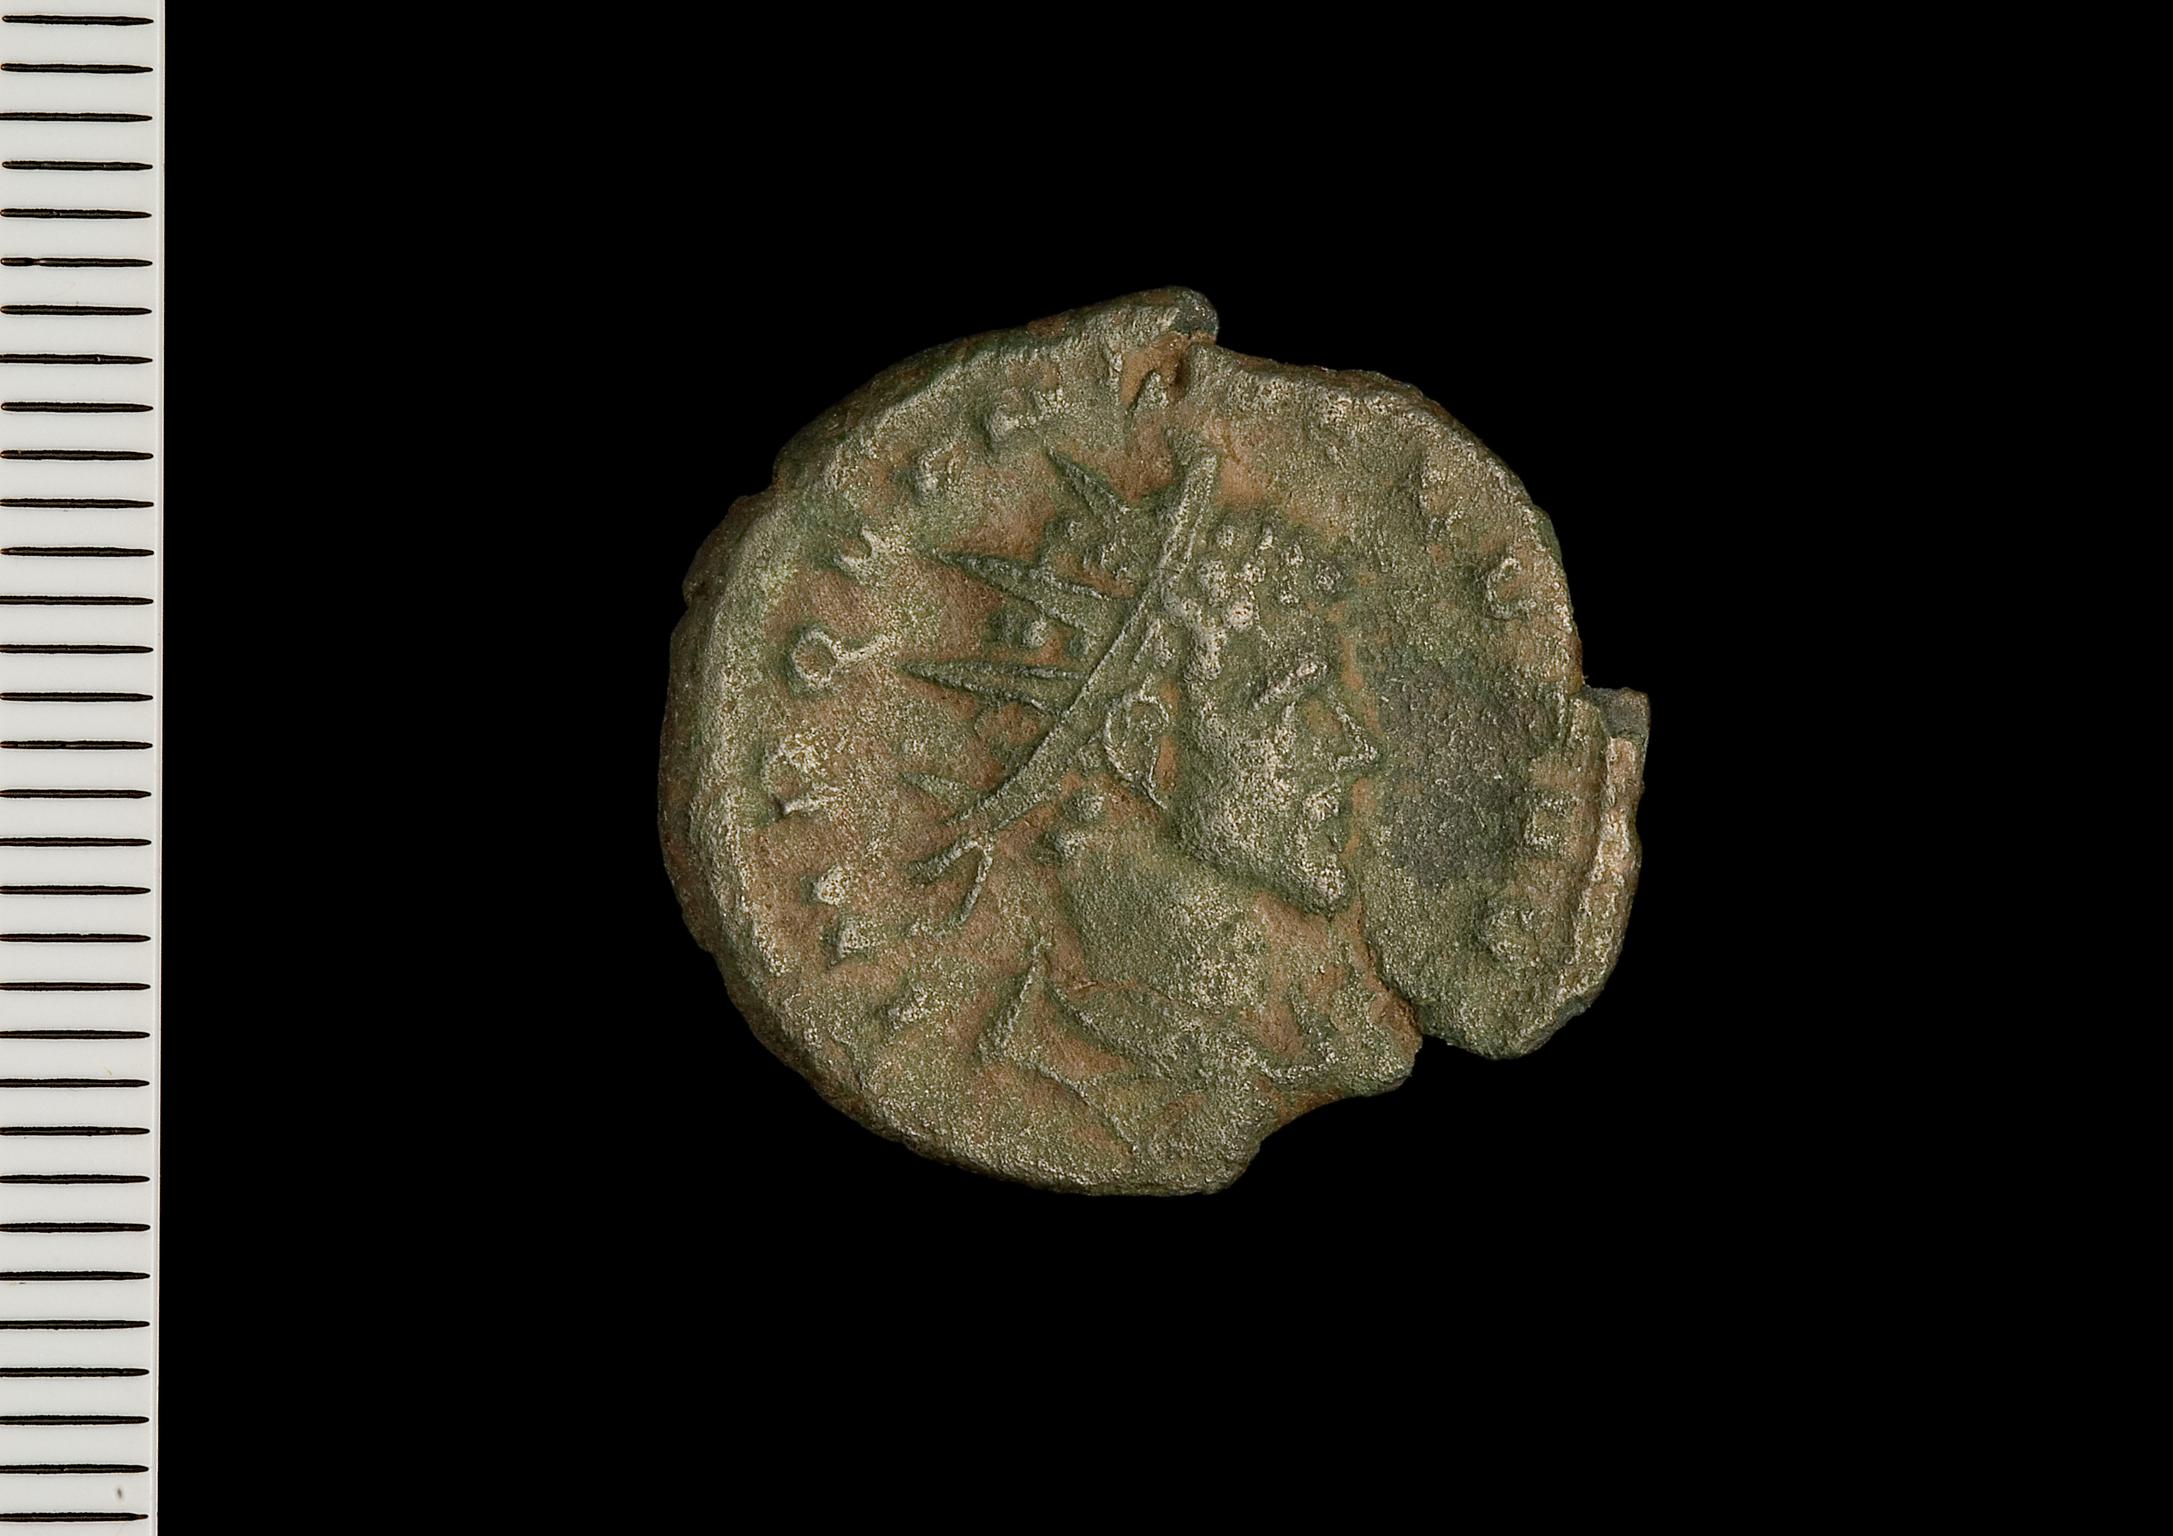 Llys Awel Roman coins